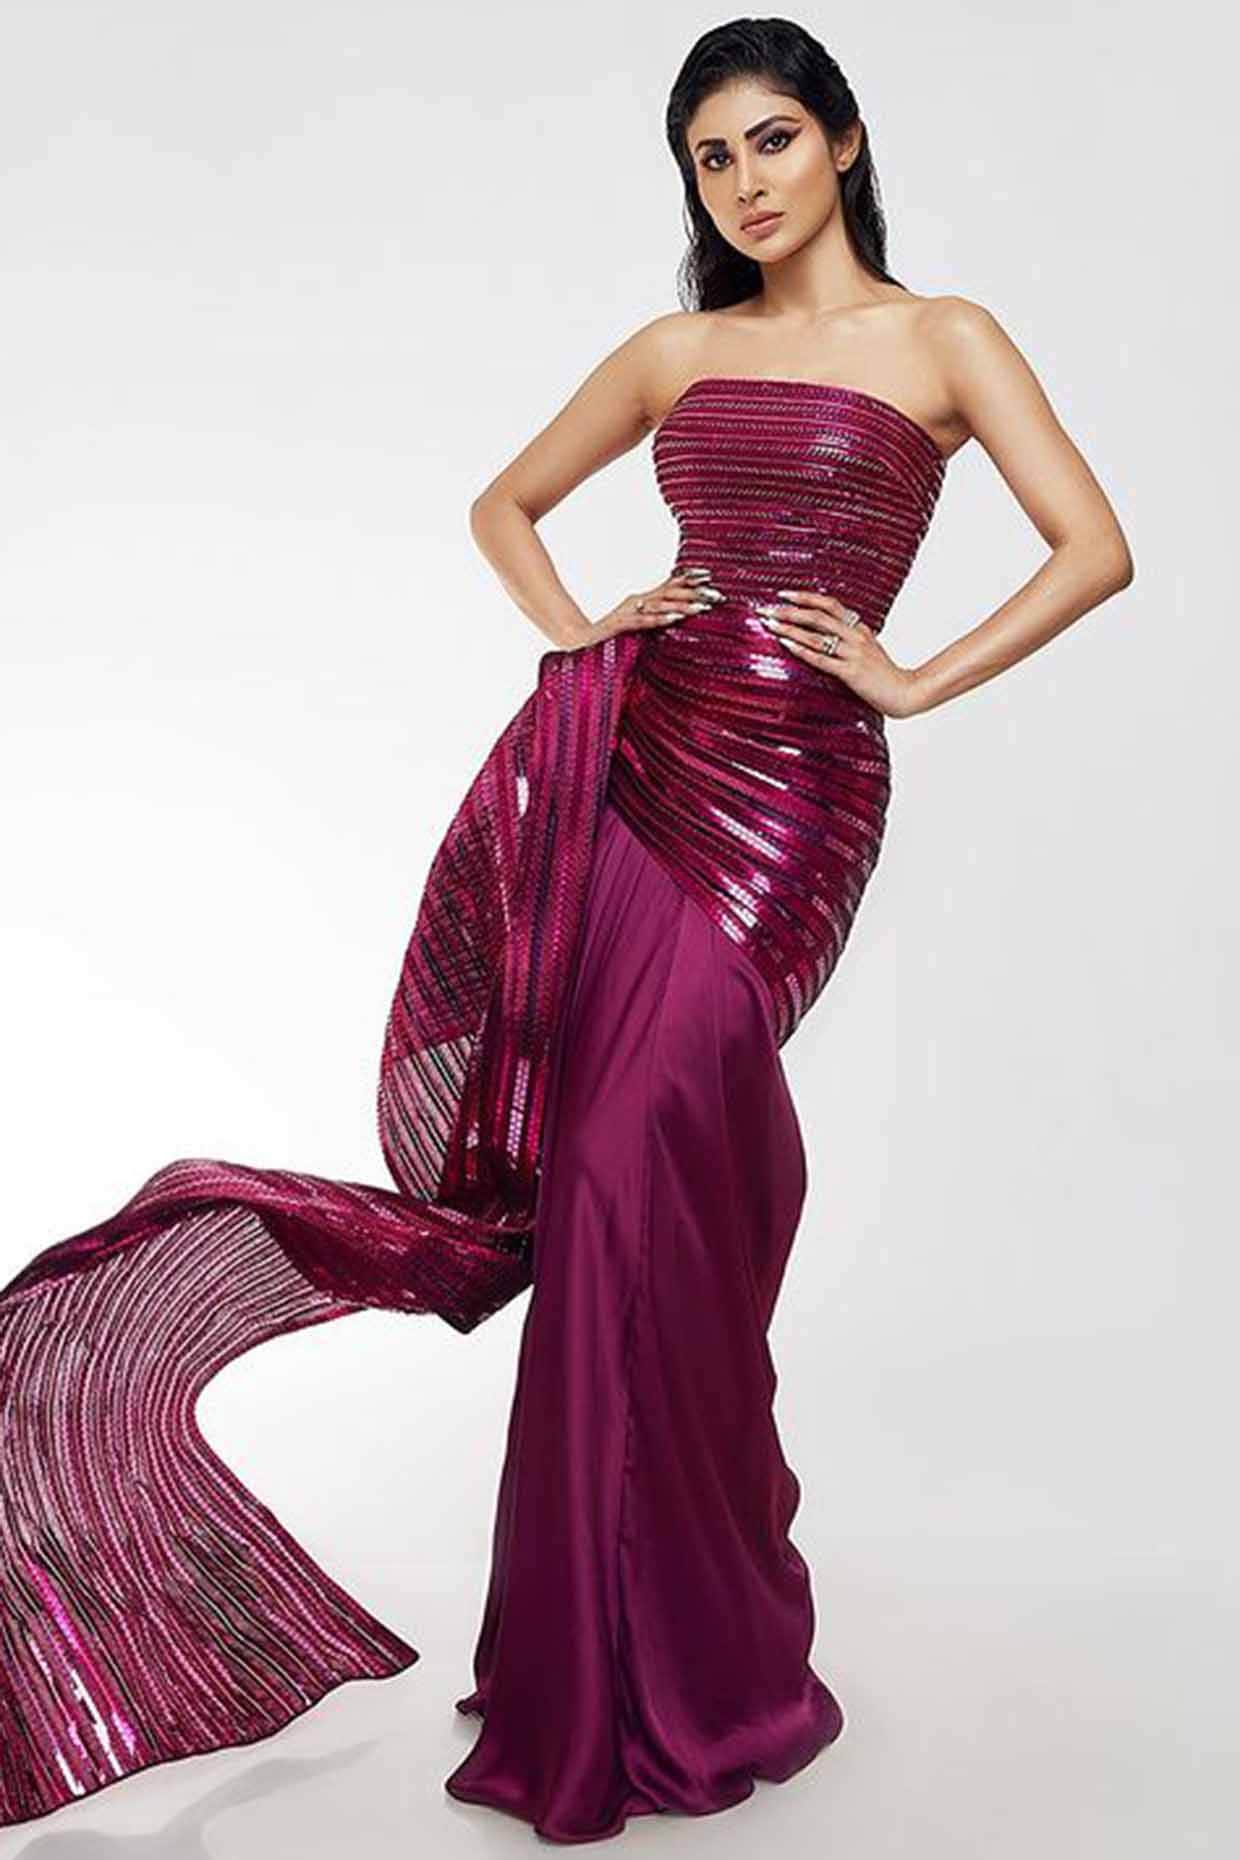 Mouni Roys Strapless Dresses